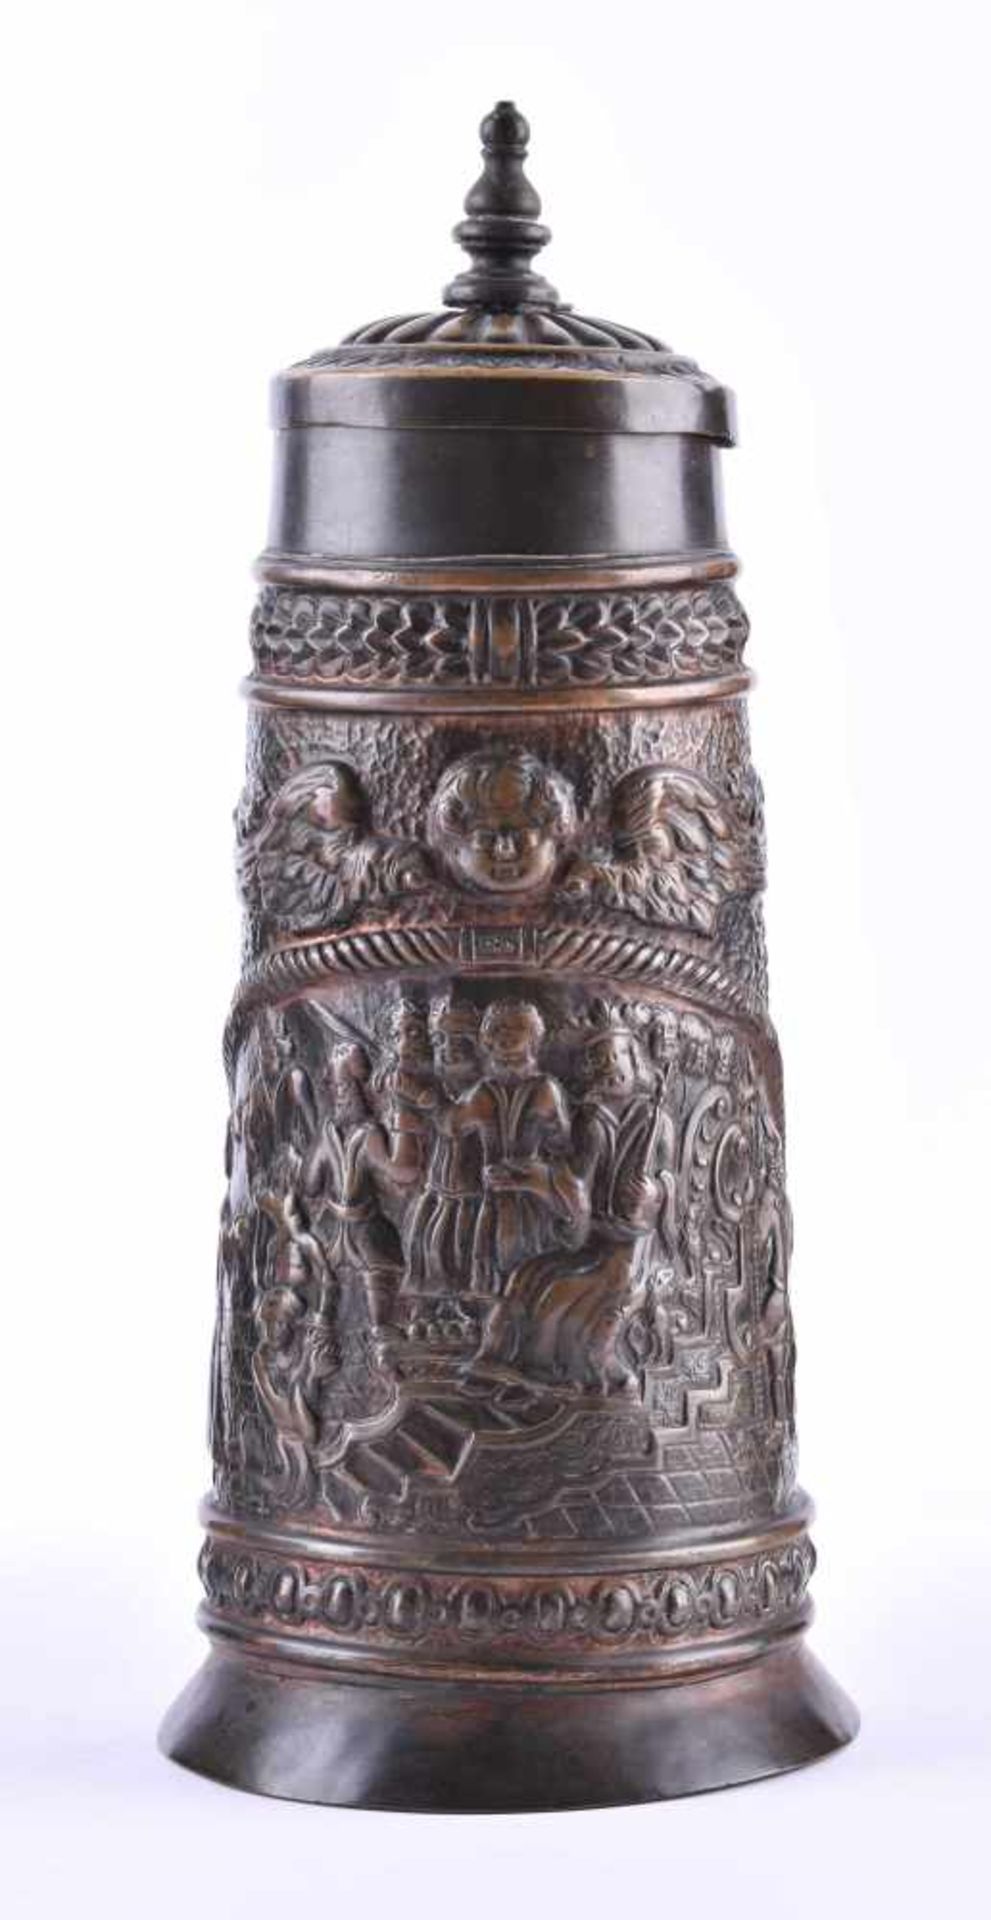 Barock-Henkelkrug um 1740Bronze, H: 29,5 cmBaroque handle jug around 1740bronze, height: 29.5 cm - Bild 2 aus 5